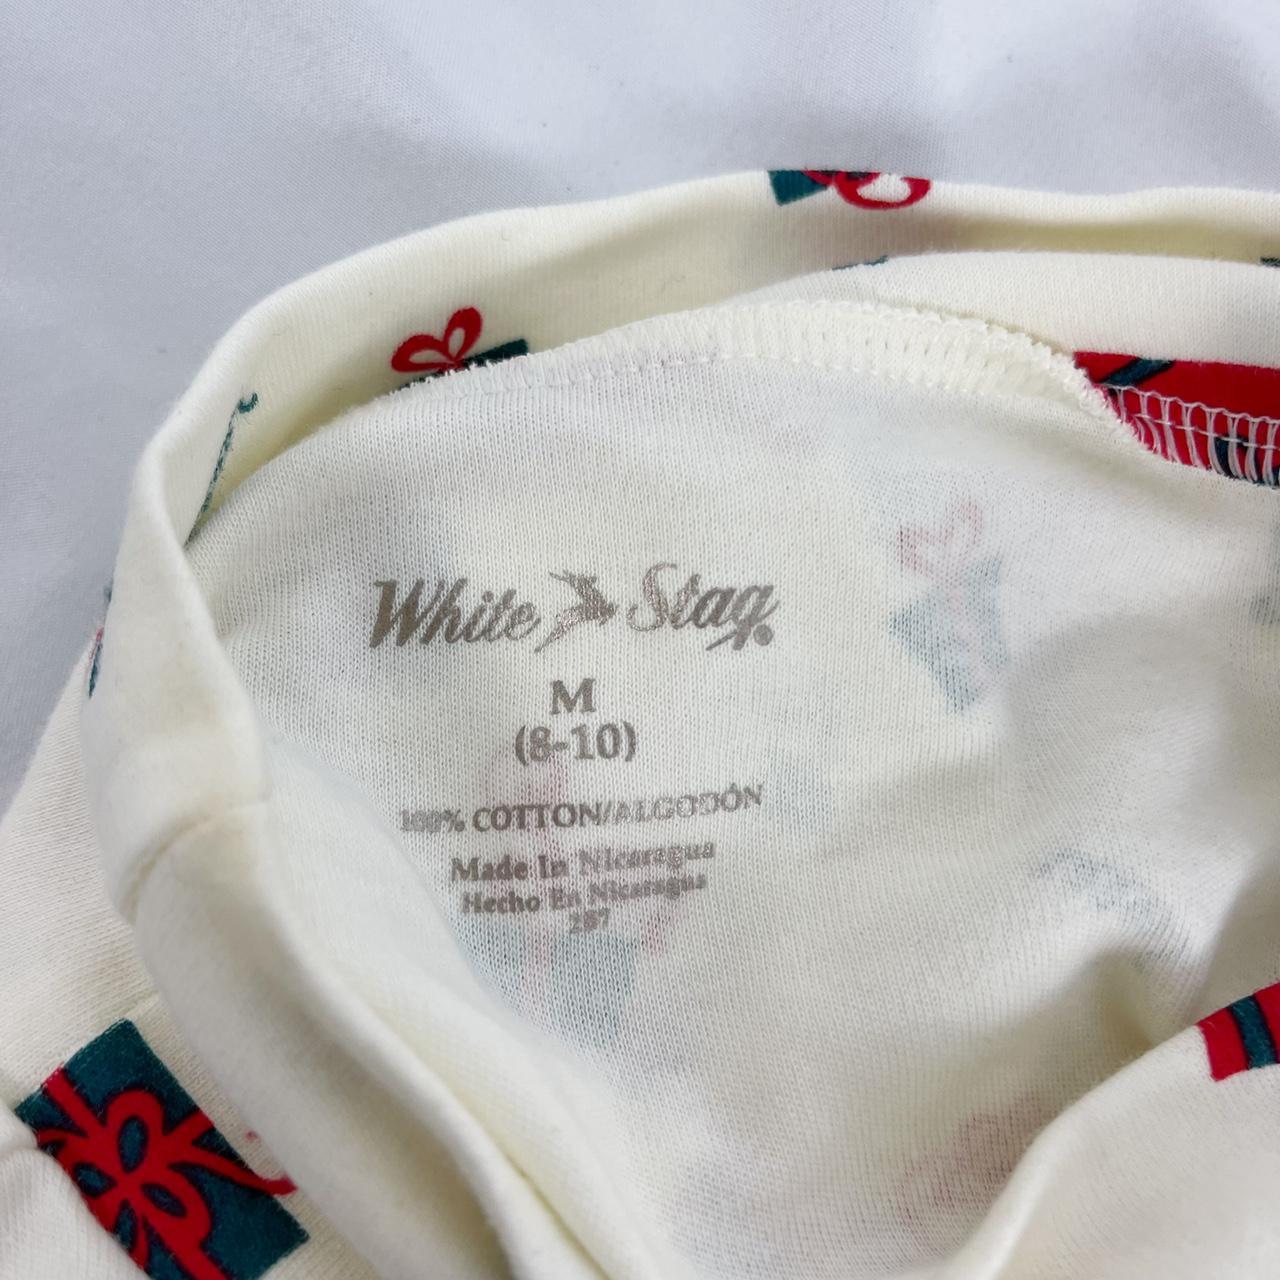 White Stag Men's White Shirt (4)